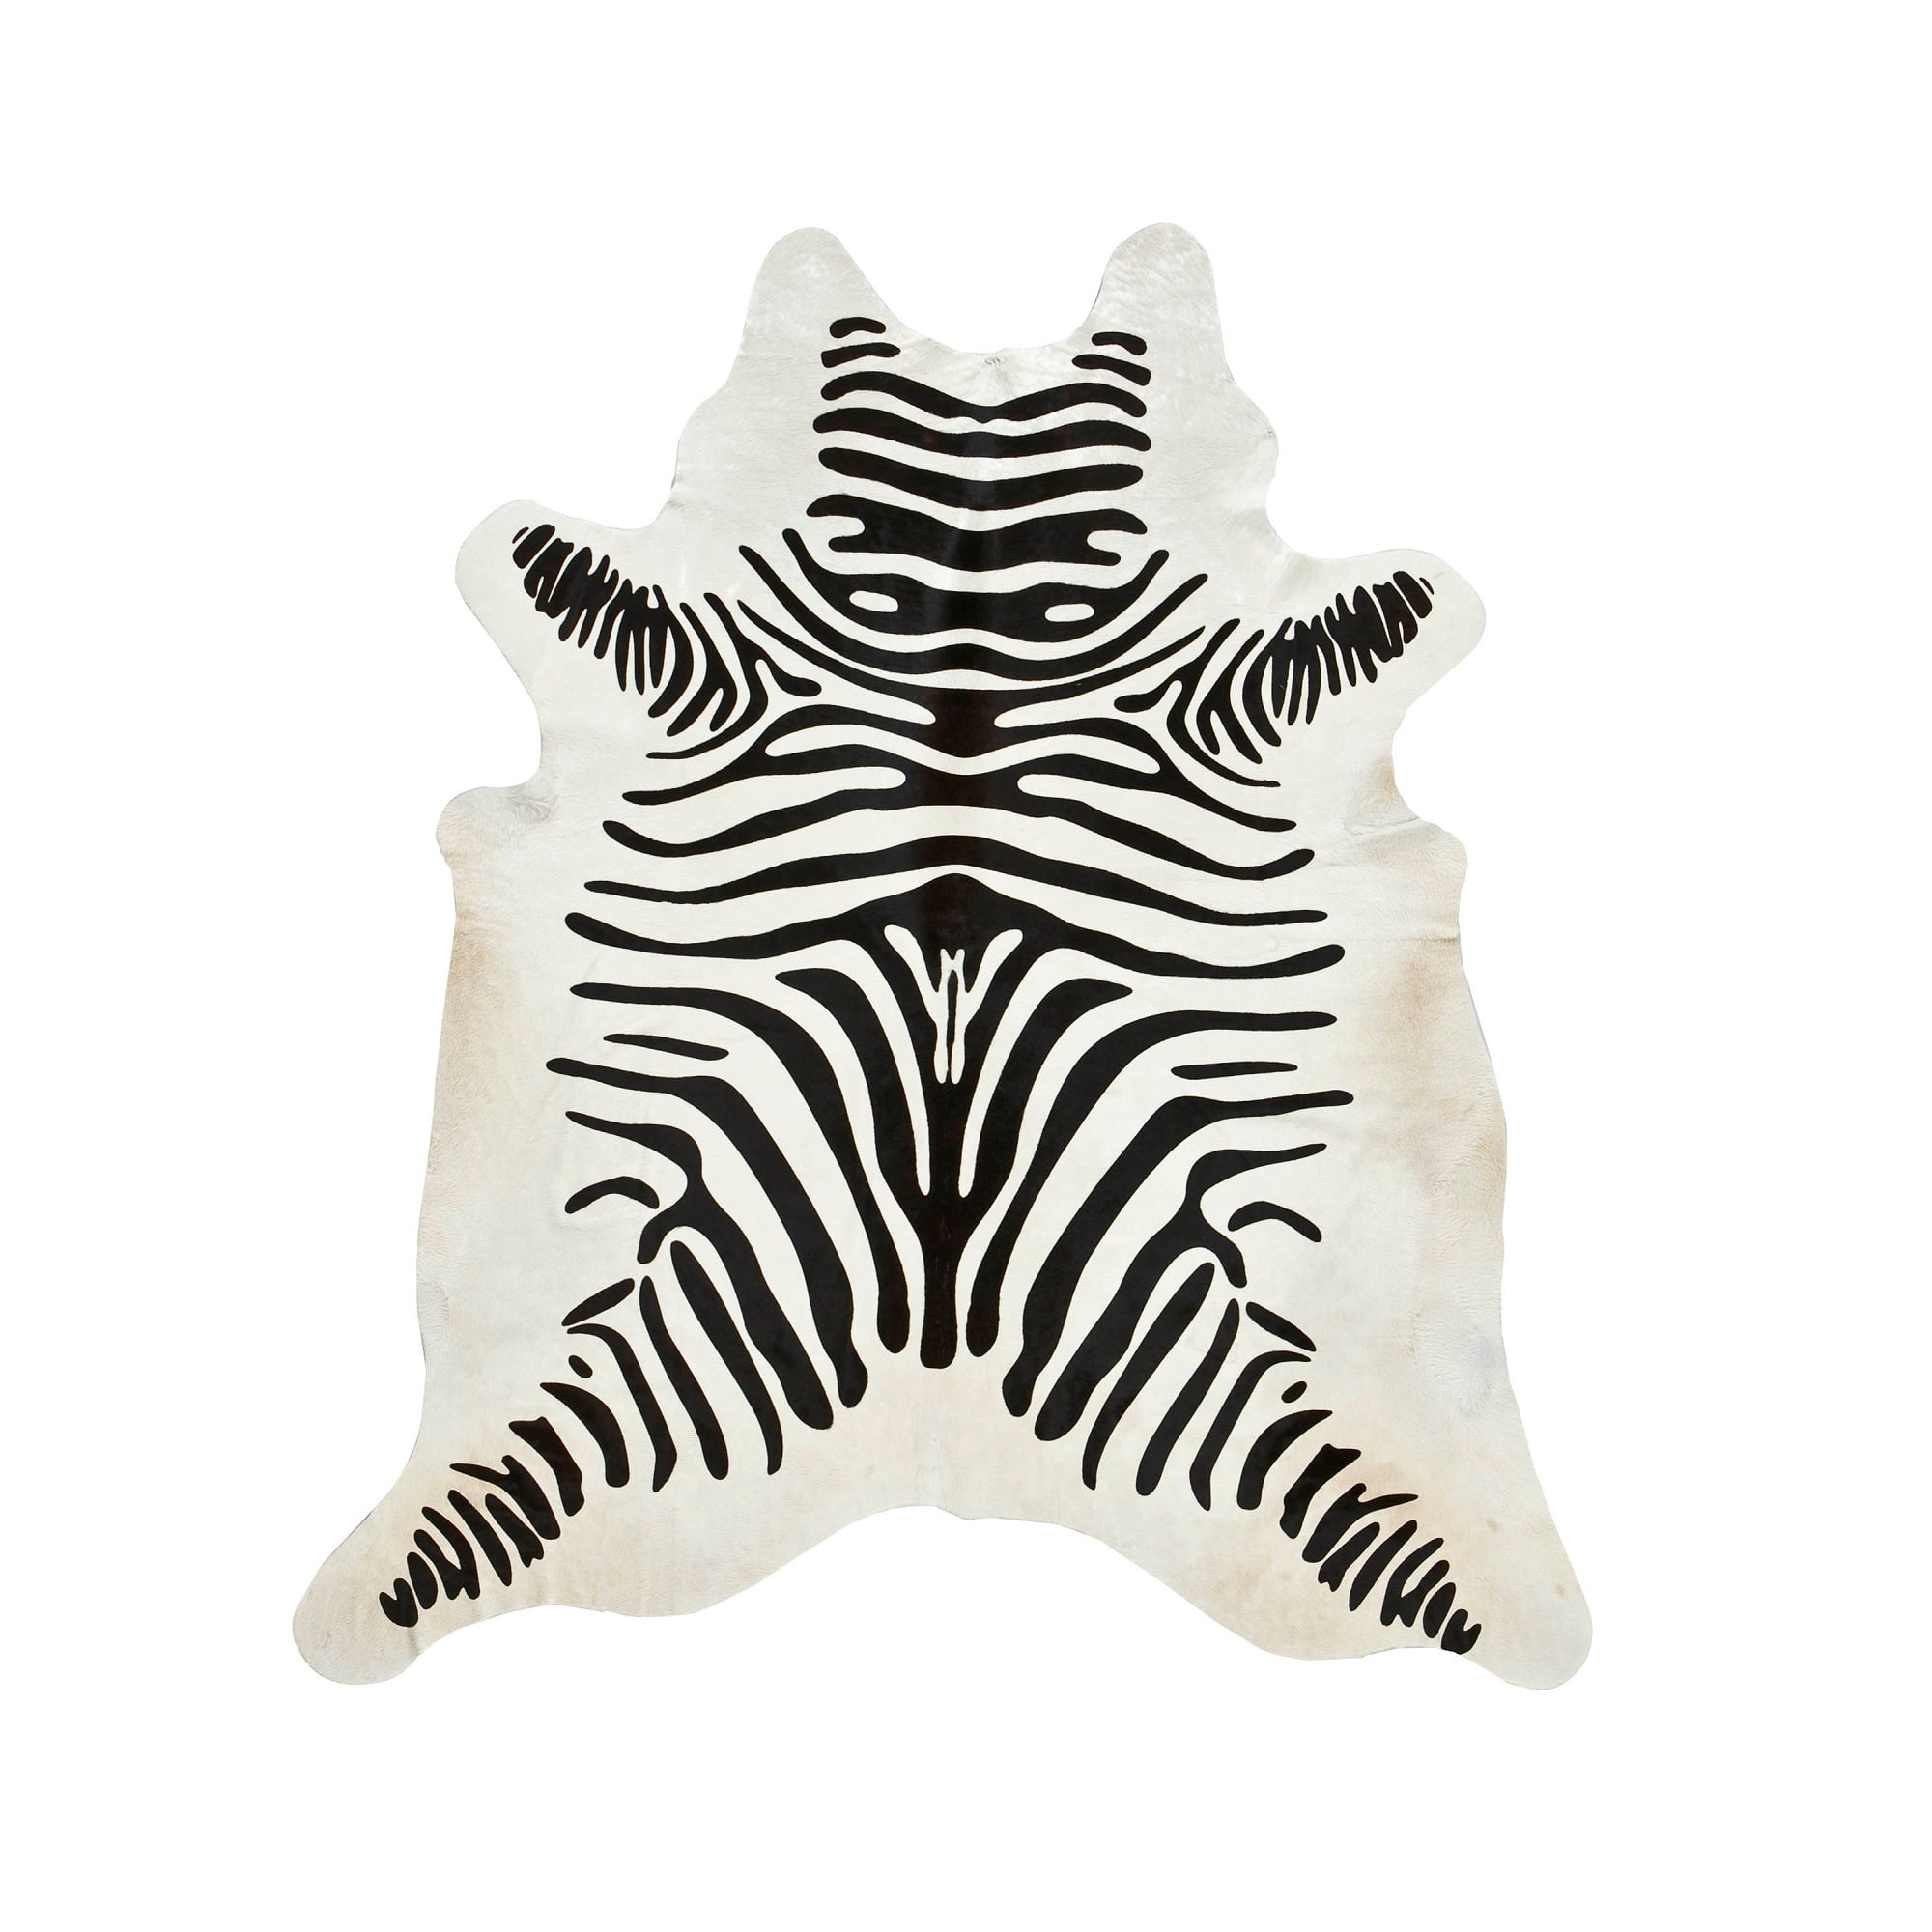 7' X 6' Black/White Zebra Cow Hide Rug Zebra Print Cowhide Rug Size 